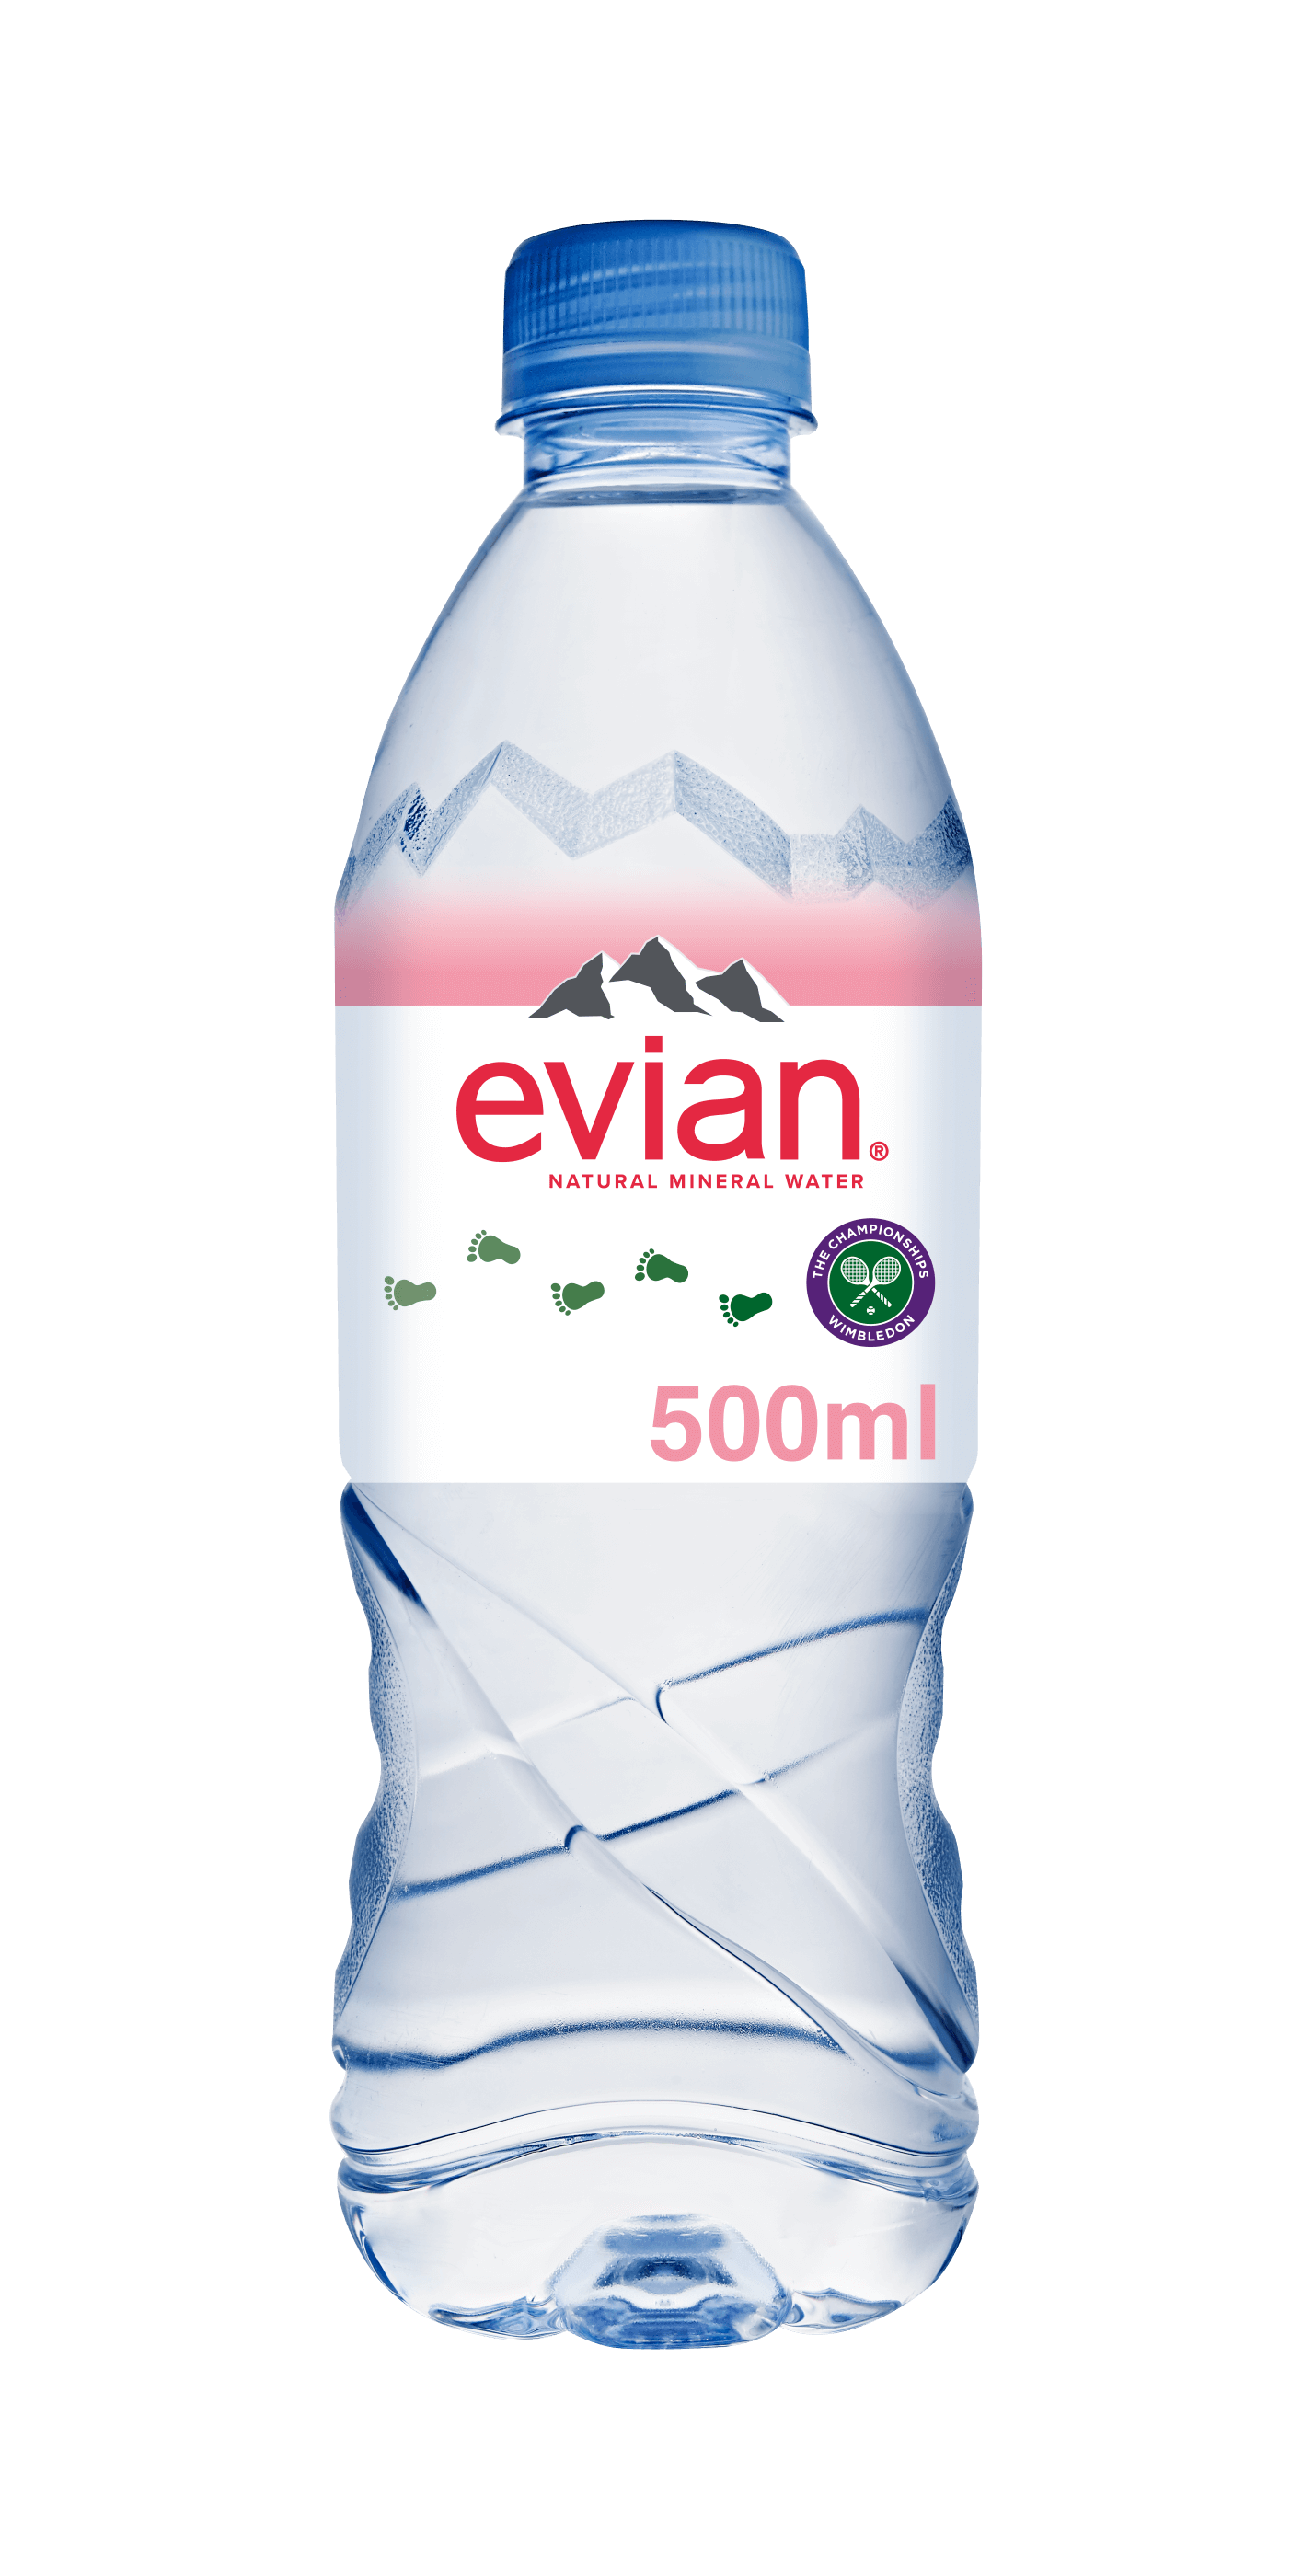 evian 500ml Water Bottles | evian 50cl | evian® - evian Natural Mineral